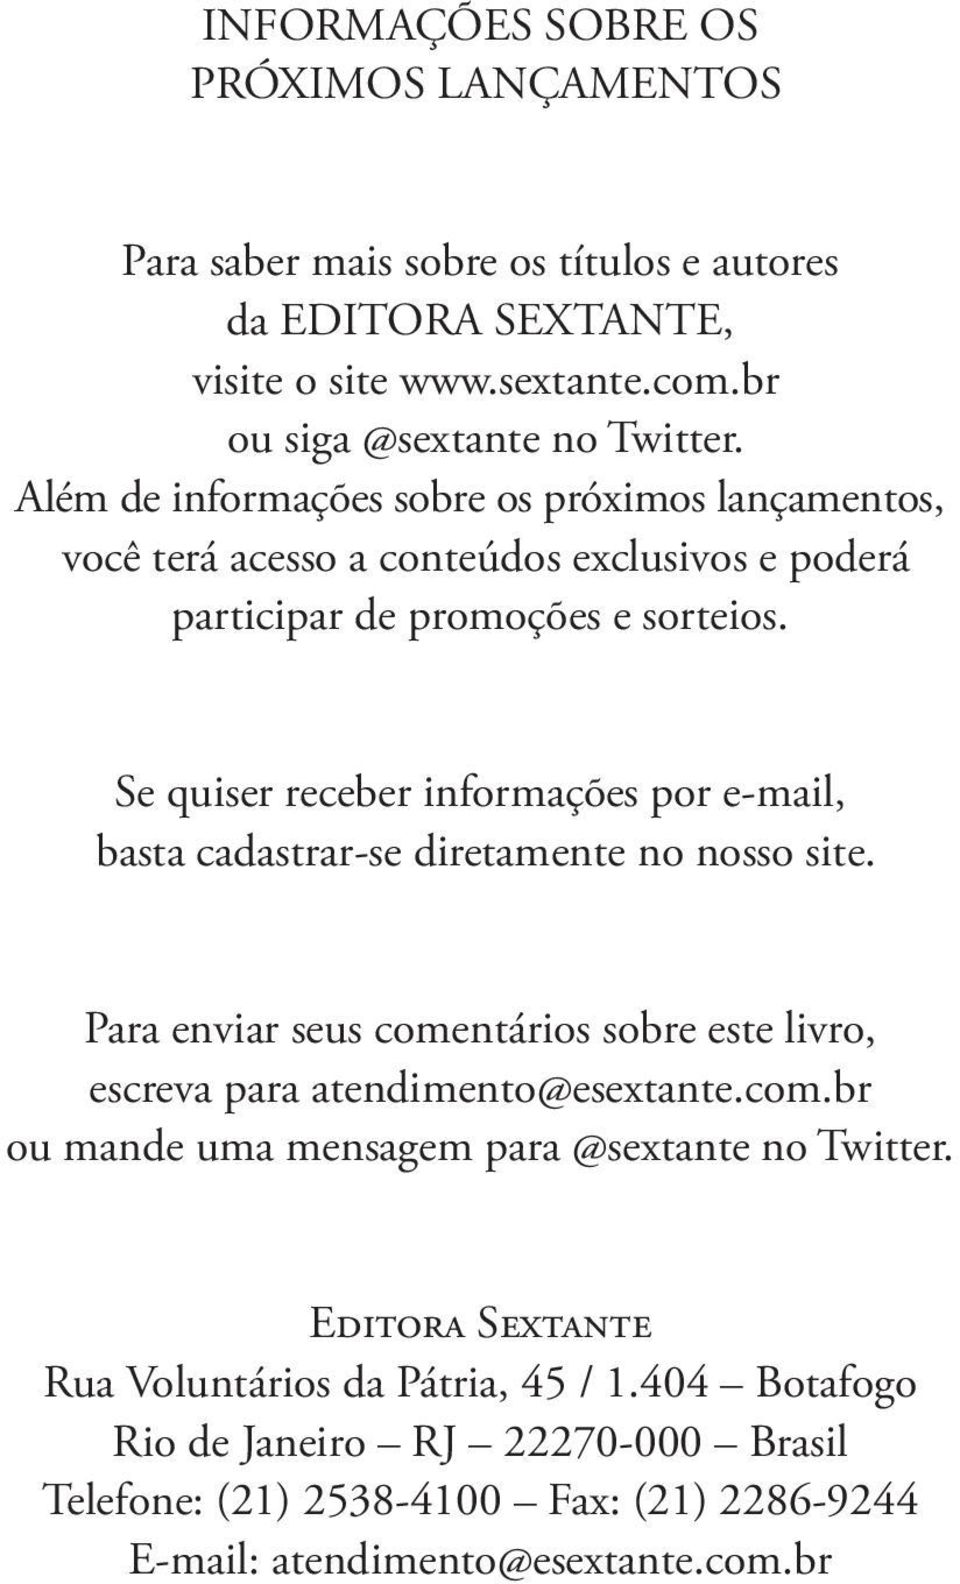 Se quiser receber informações por e-mail, basta cadastrar-se diretamente no nosso site. Para enviar seus comentários sobre este livro, escreva para atendimento@esextante.com.br ou mande uma mensagem para @sextante no Twitter.